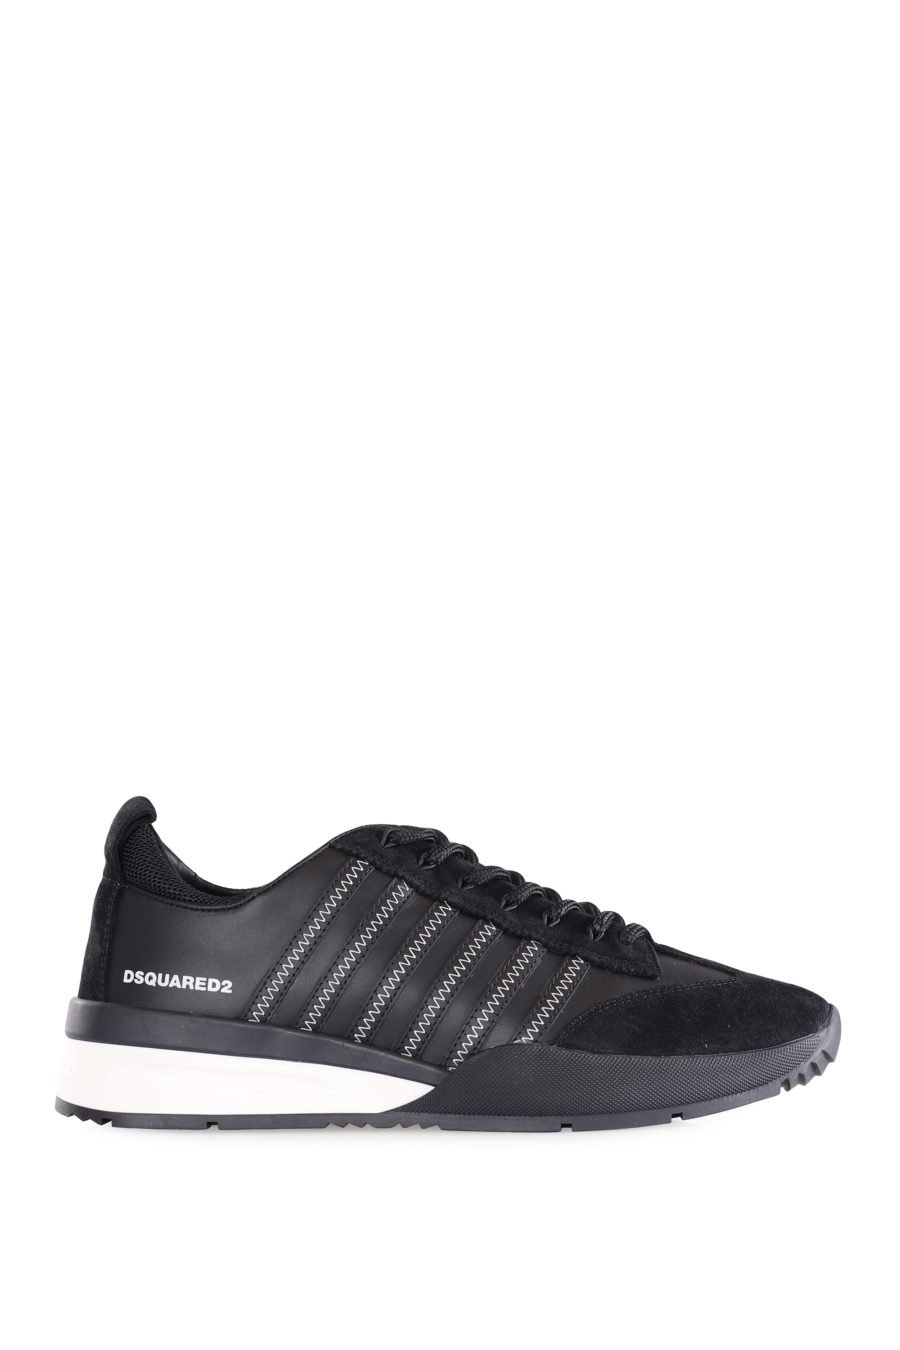 Zapatillas negras con lineas negras y logo blanco pequeño - IMG 9557